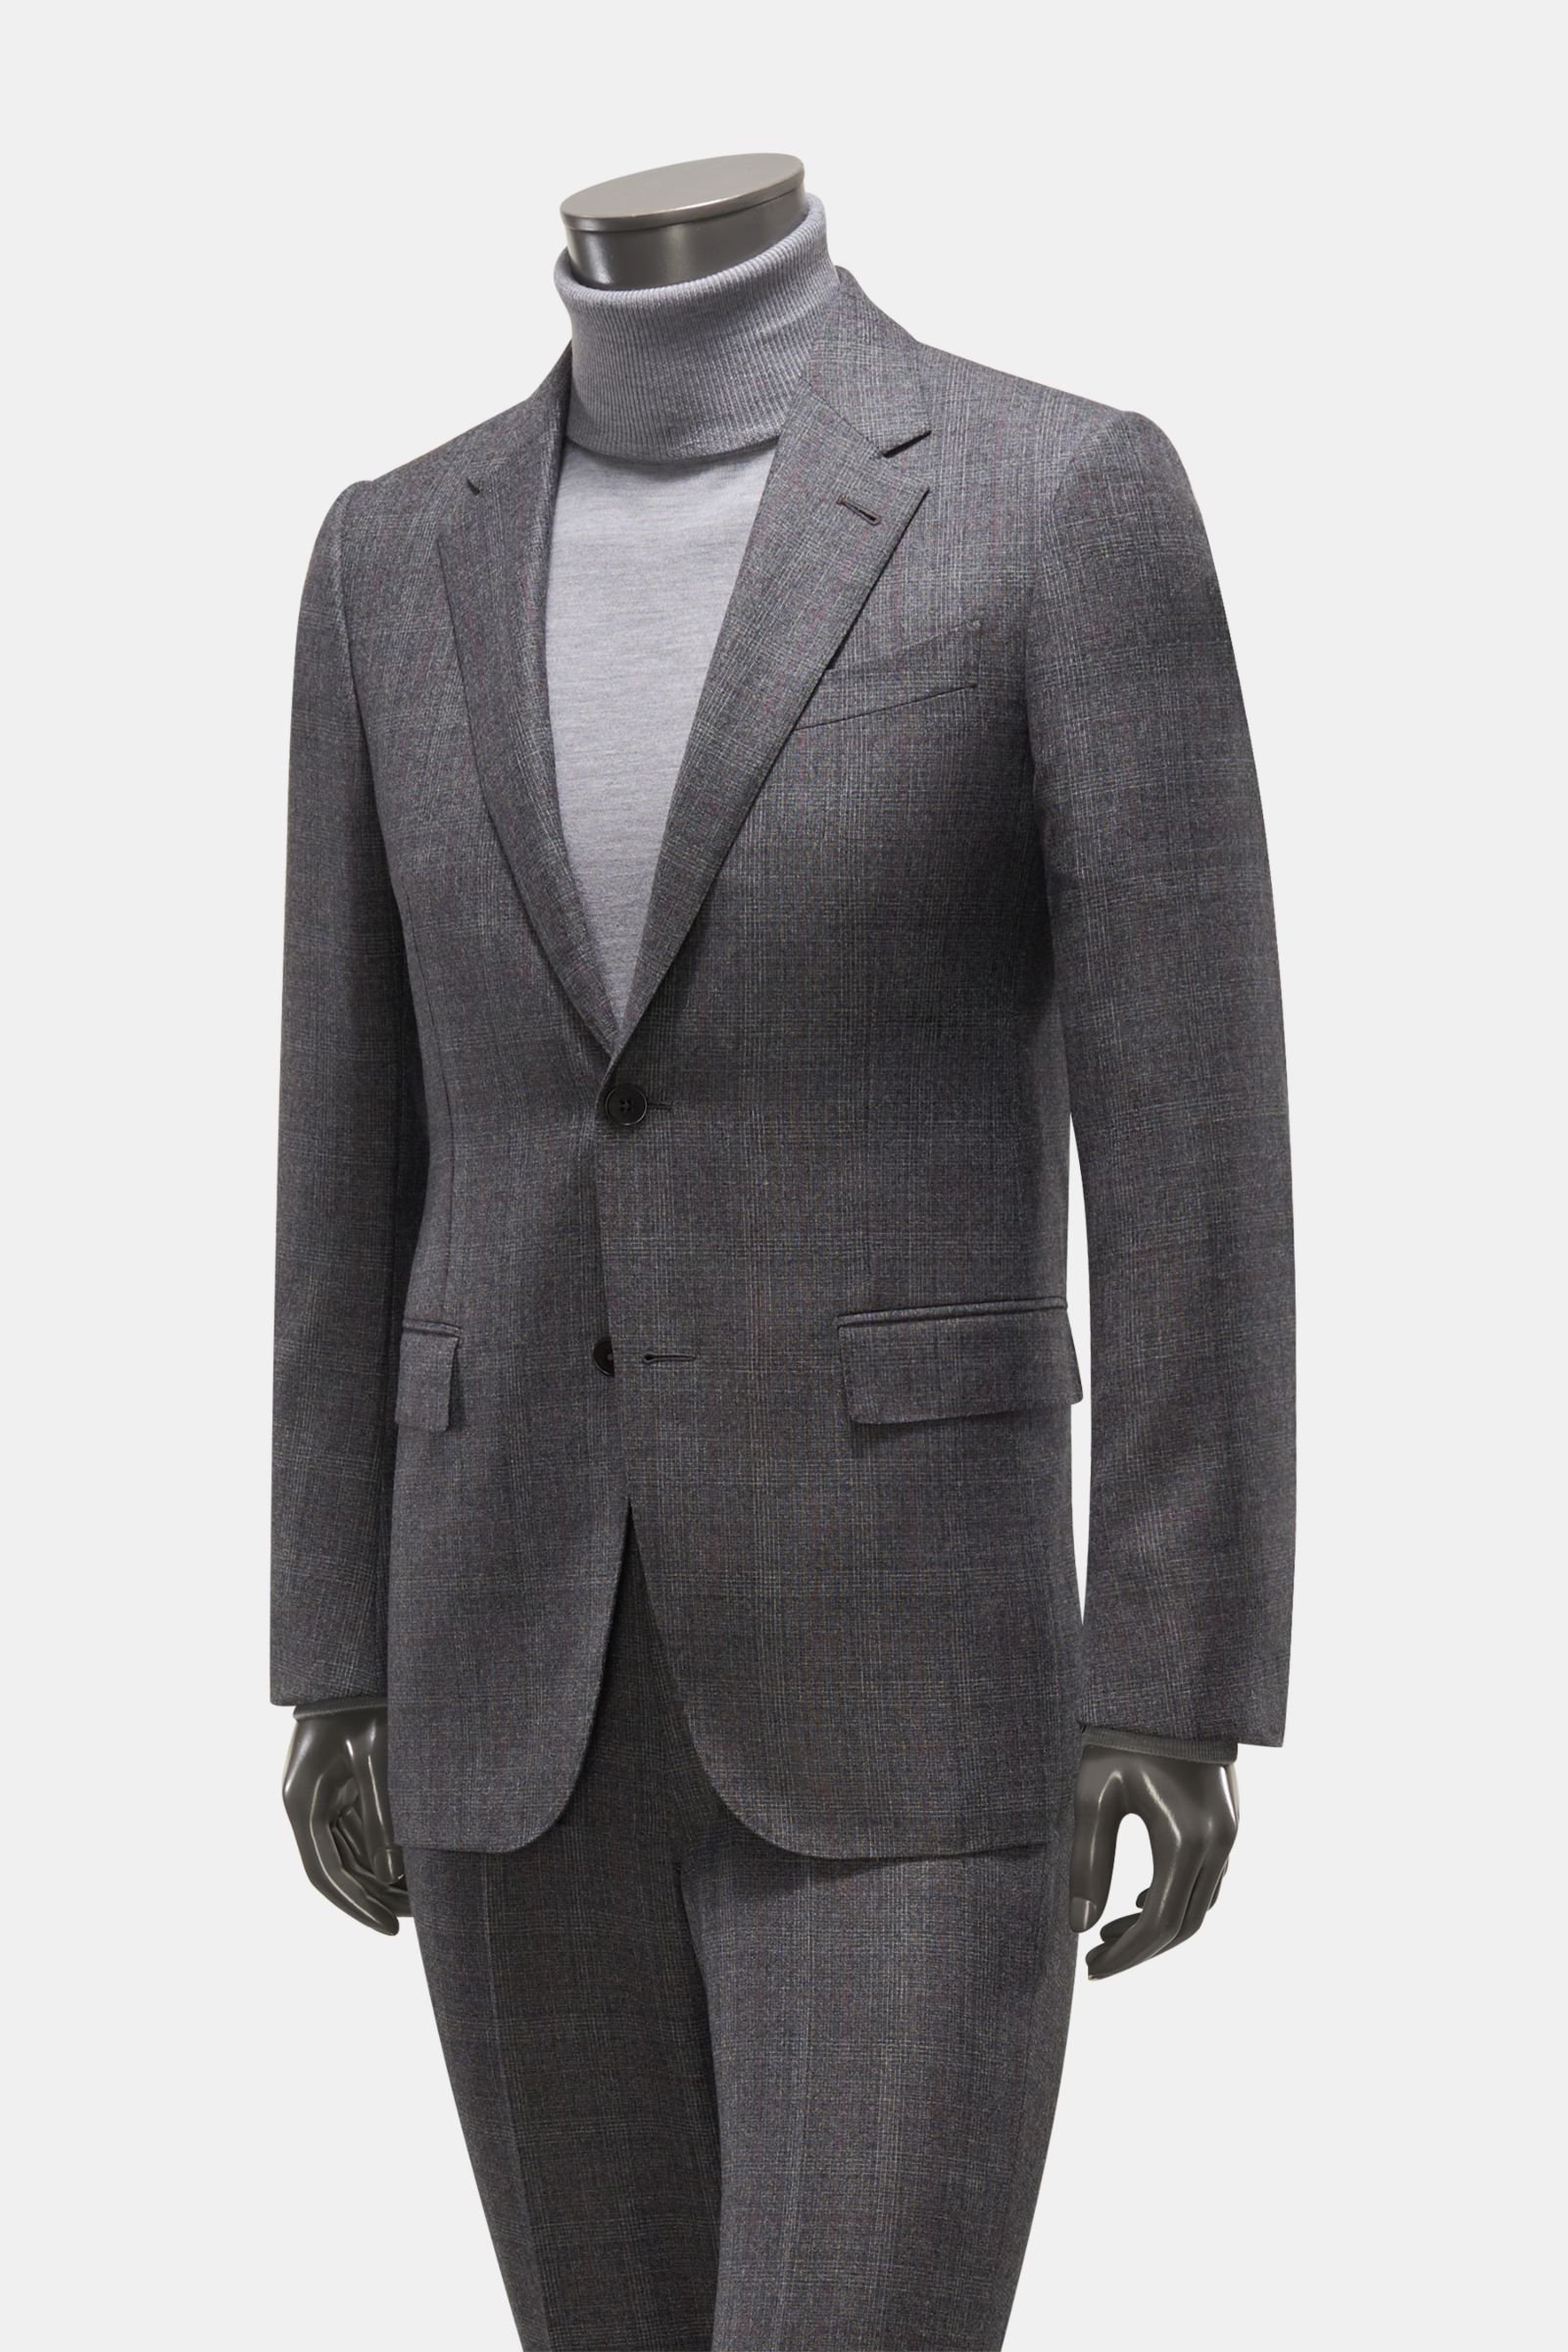 Suit 'Milano' dark grey/antique pink checked